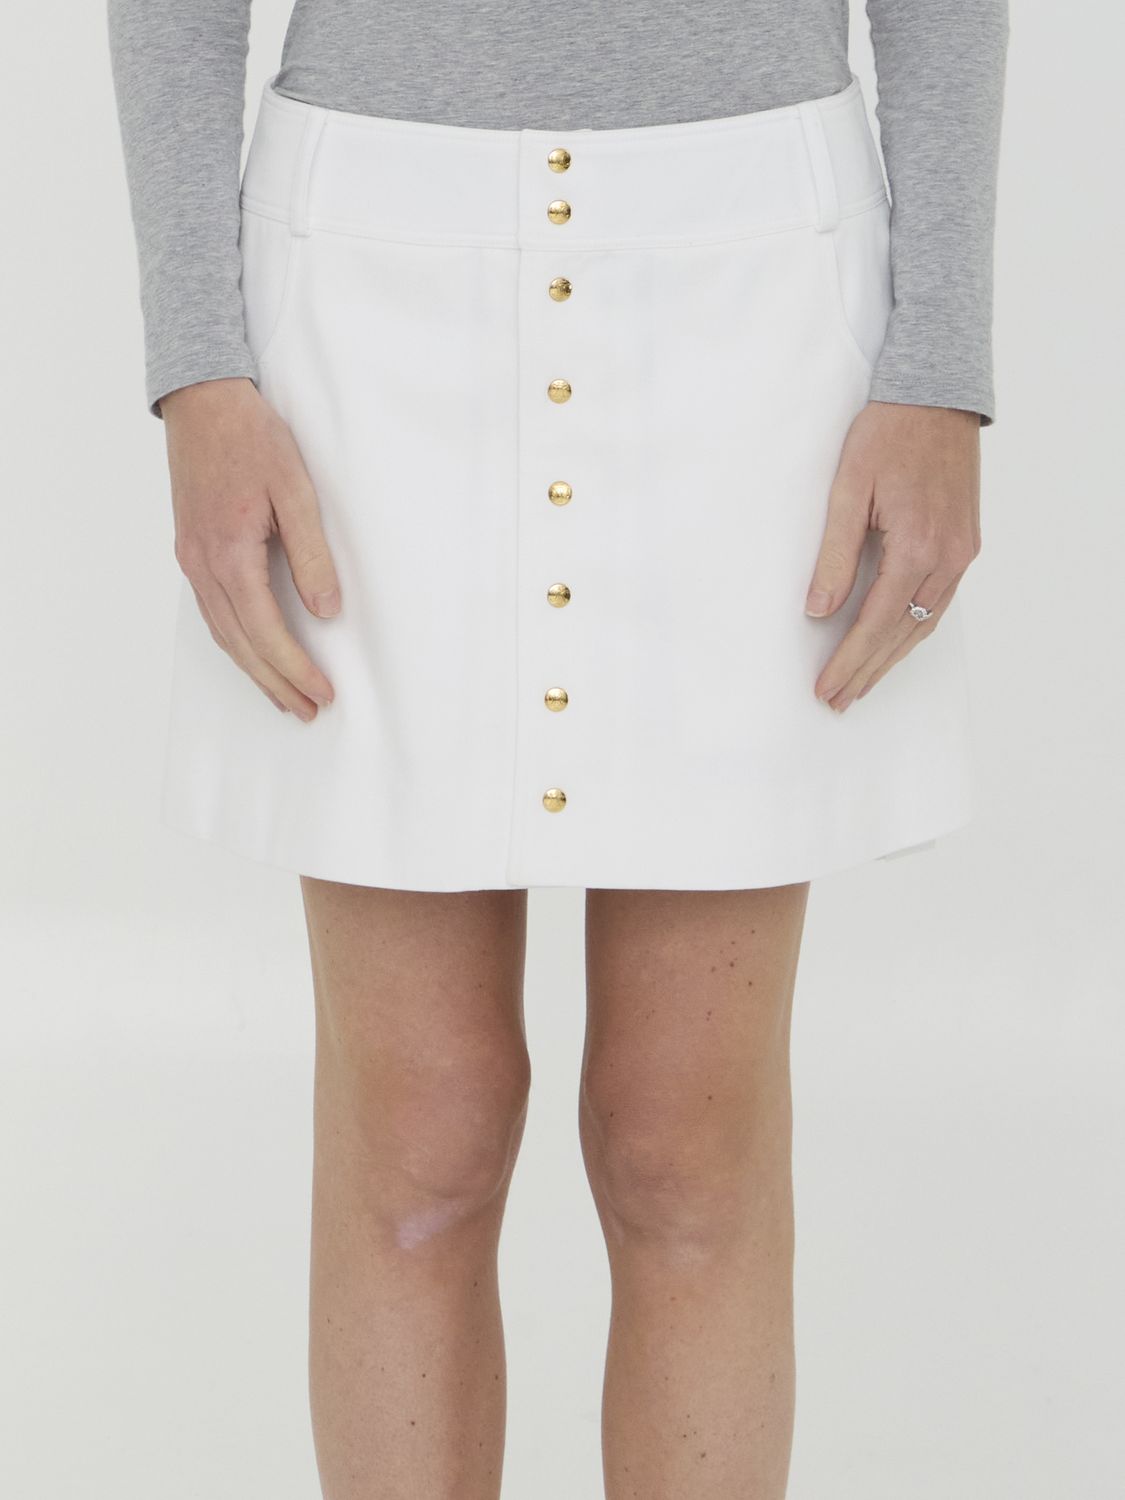 Chân váy ngắn màu trắng từ cotton, nút kim loại màu vàng - Thời trang nữ